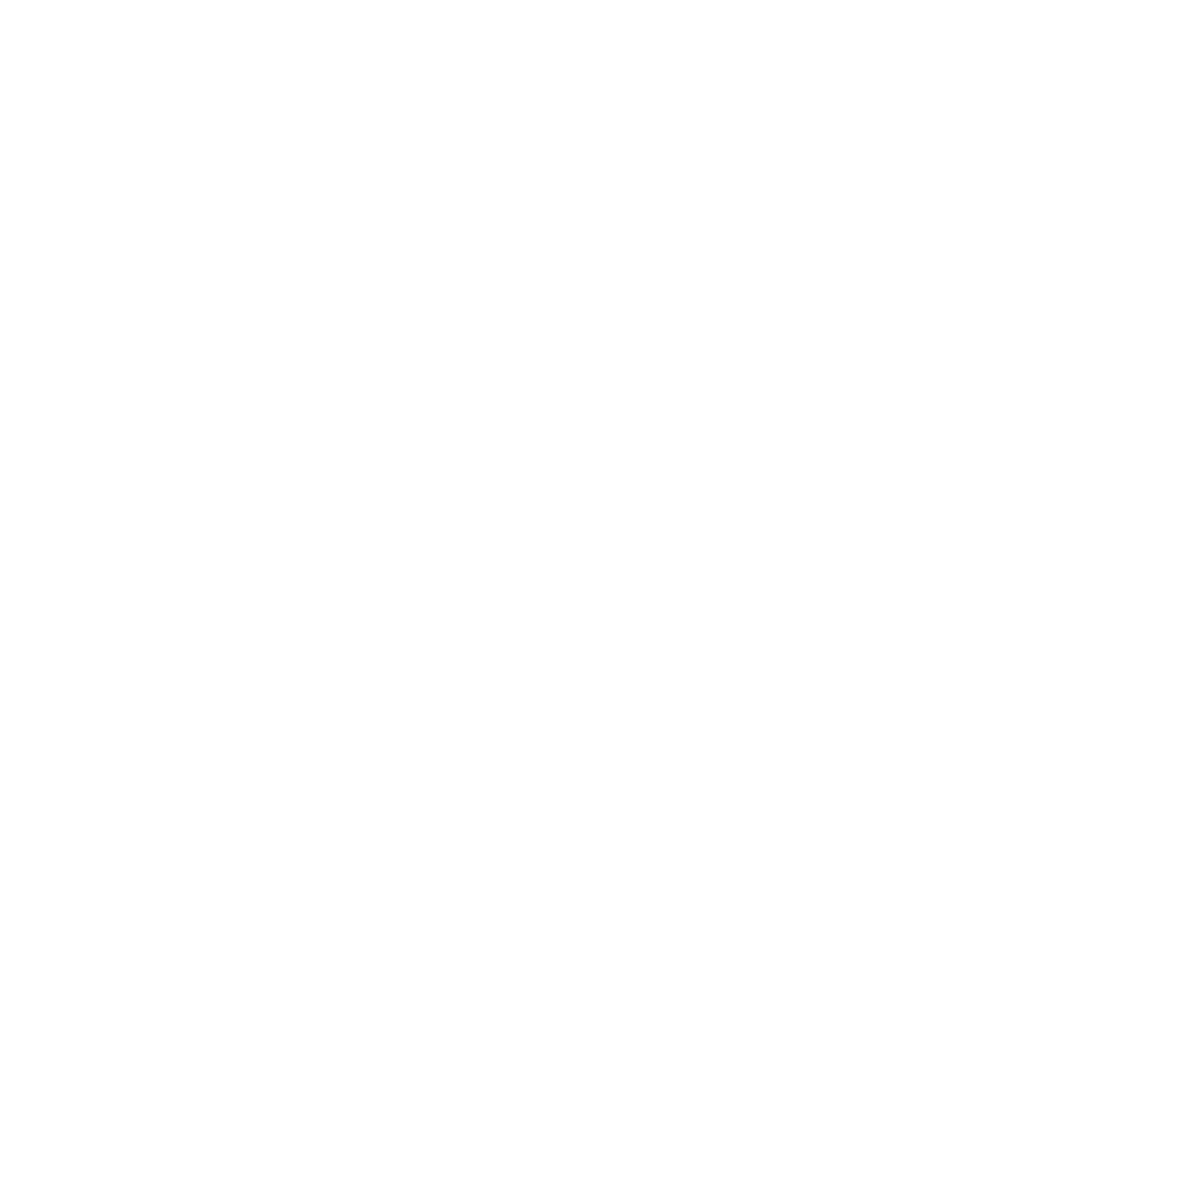 logo france bleu